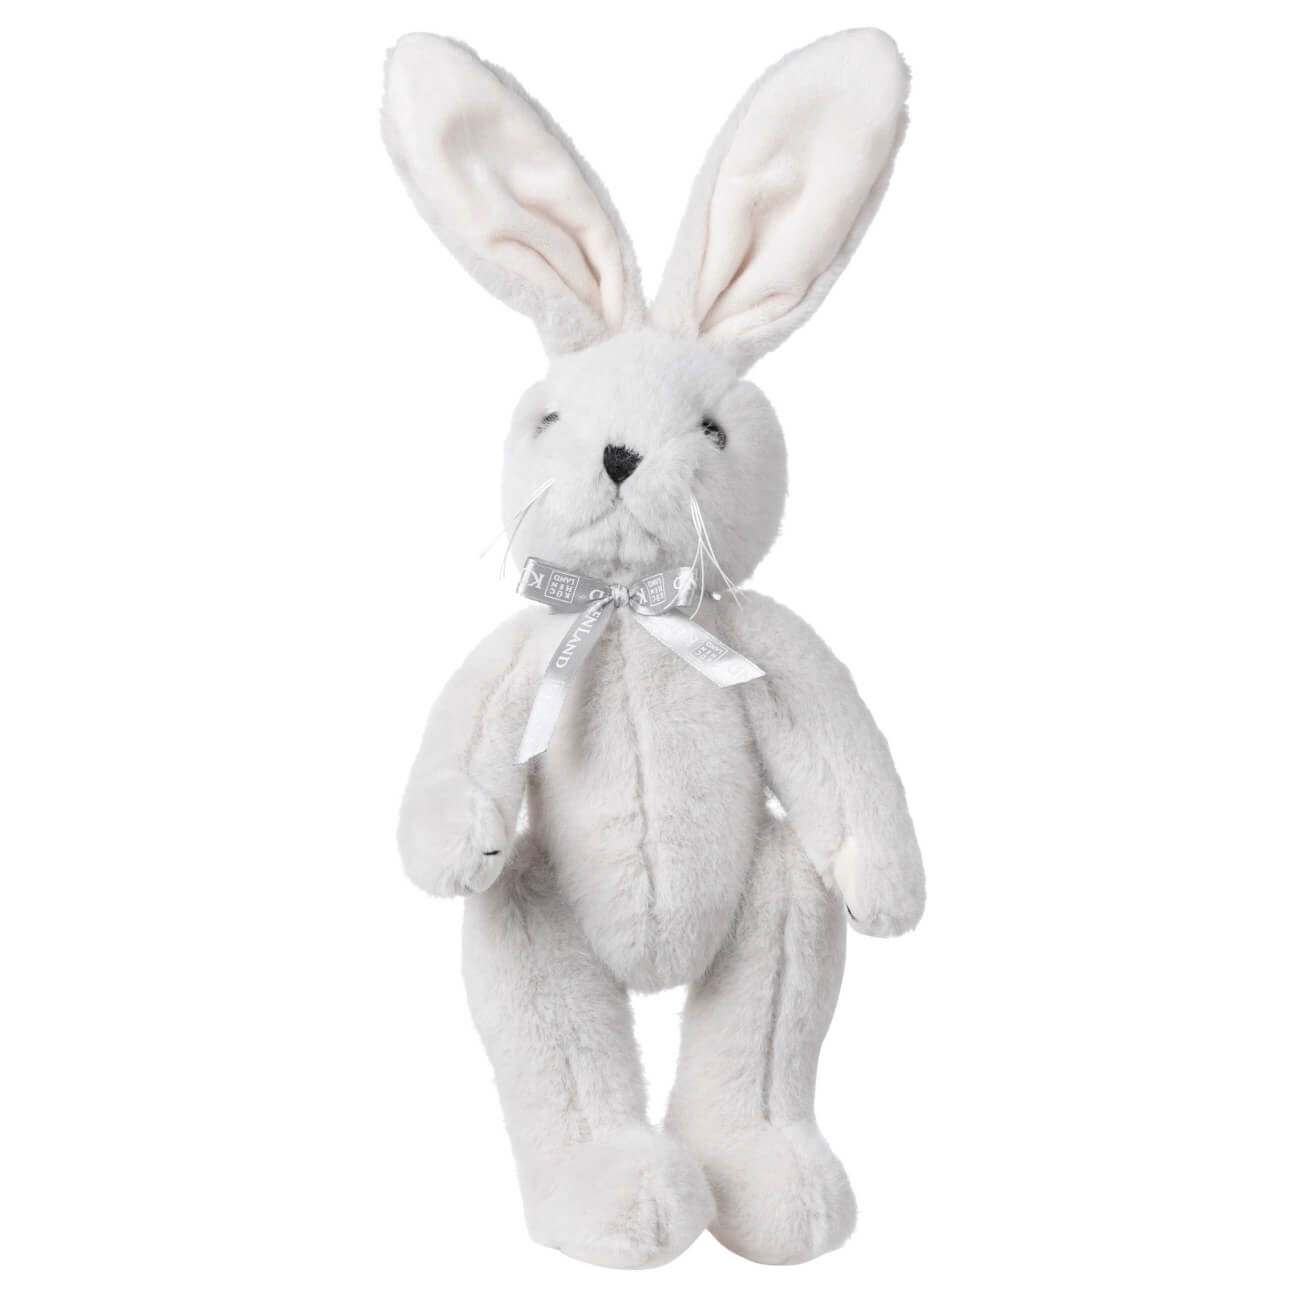 Игрушка, 30 см, мягкая, с подвижными лапами, полиэстер, светло-серая, Кролик, Rabbit toy мягкая игрушка басик в свитере кот 22 см